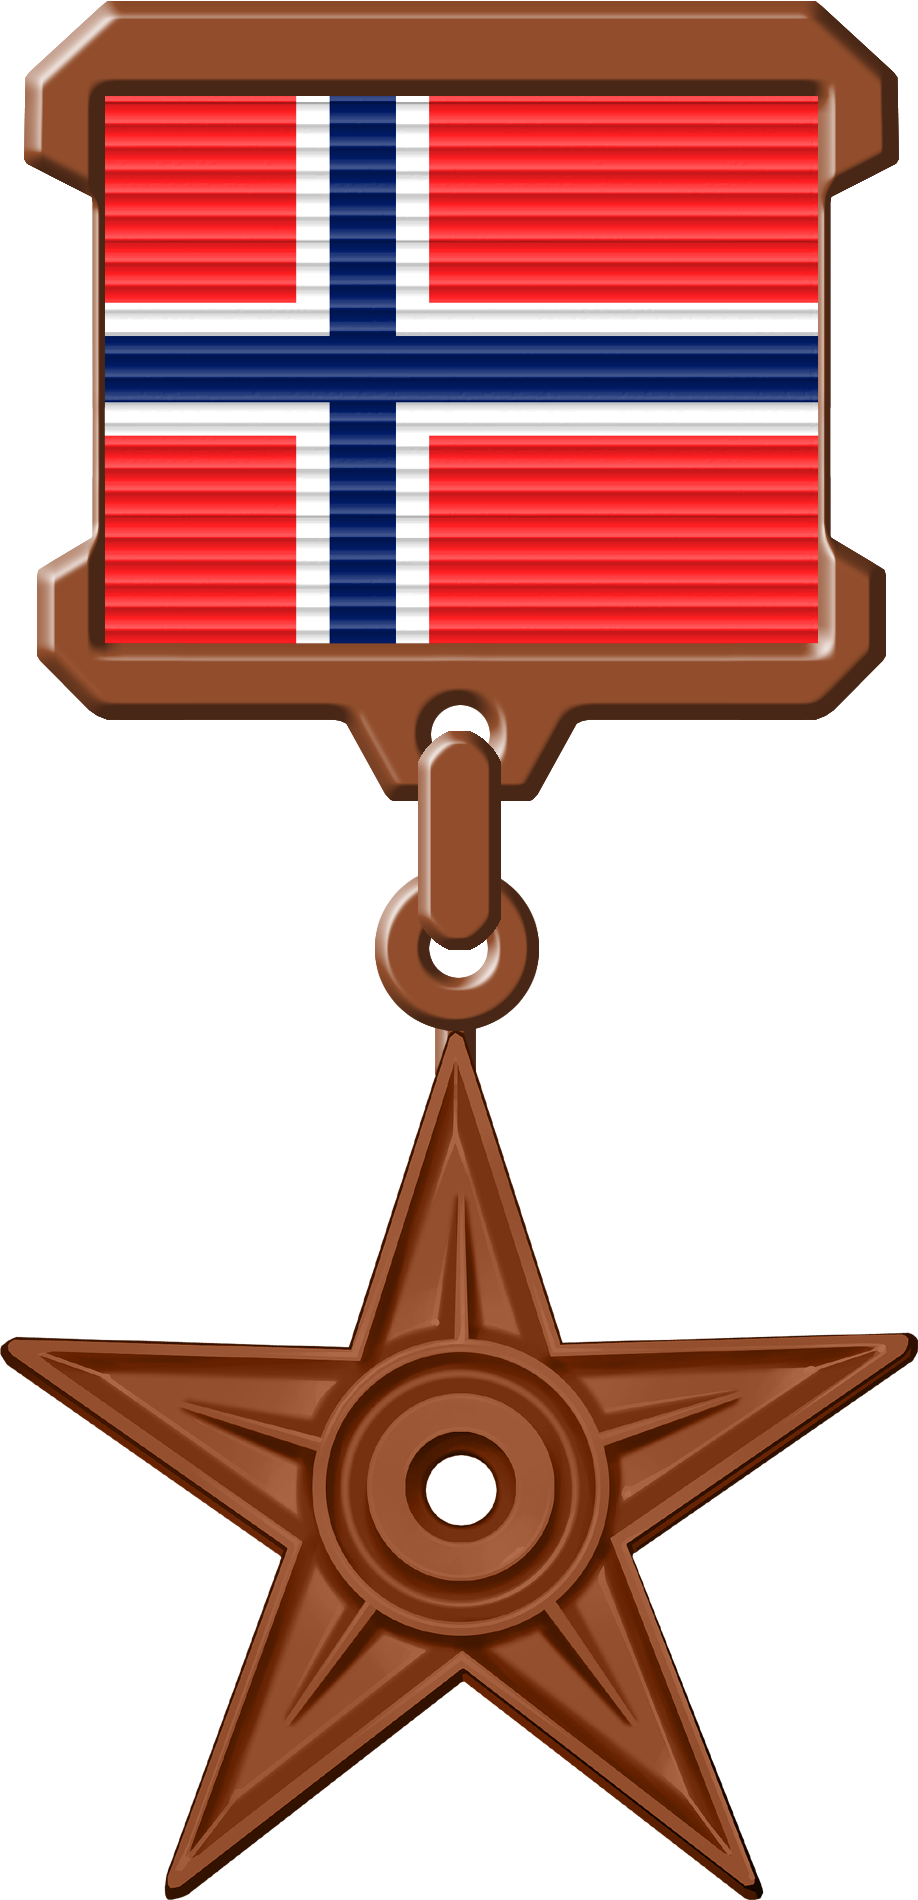 Орден #5 «Орден Норвегии», присвоен 14 февраля 2010 участником Dnikitin за «транслитерацию названий коммун Норвегии и их административных центров»